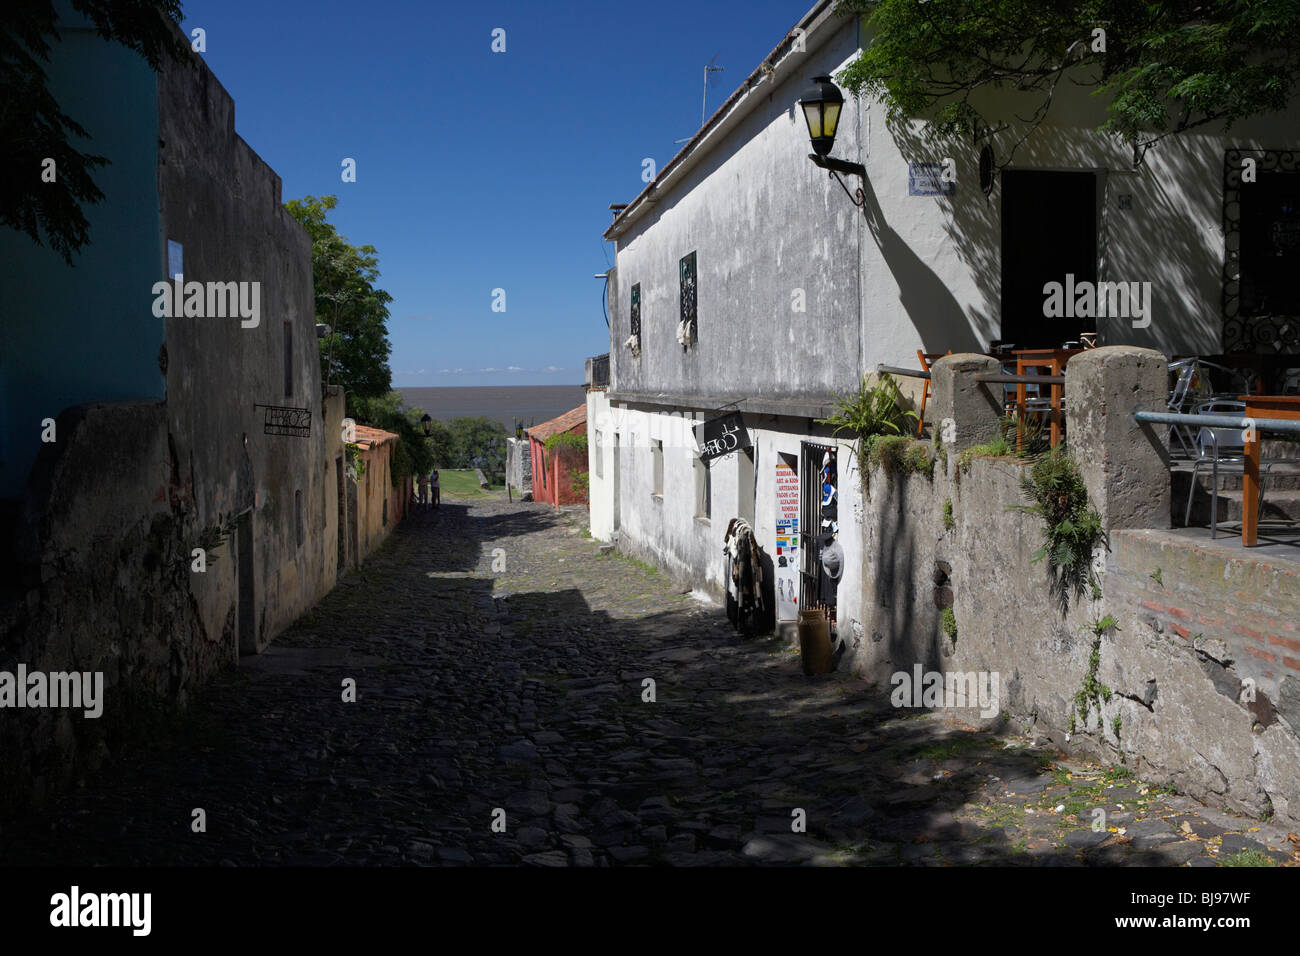 Des soupirs de la rue la plus ancienne rue dans le quartier historique de Colonia del Sacramento en Uruguay Amérique du Sud Banque D'Images